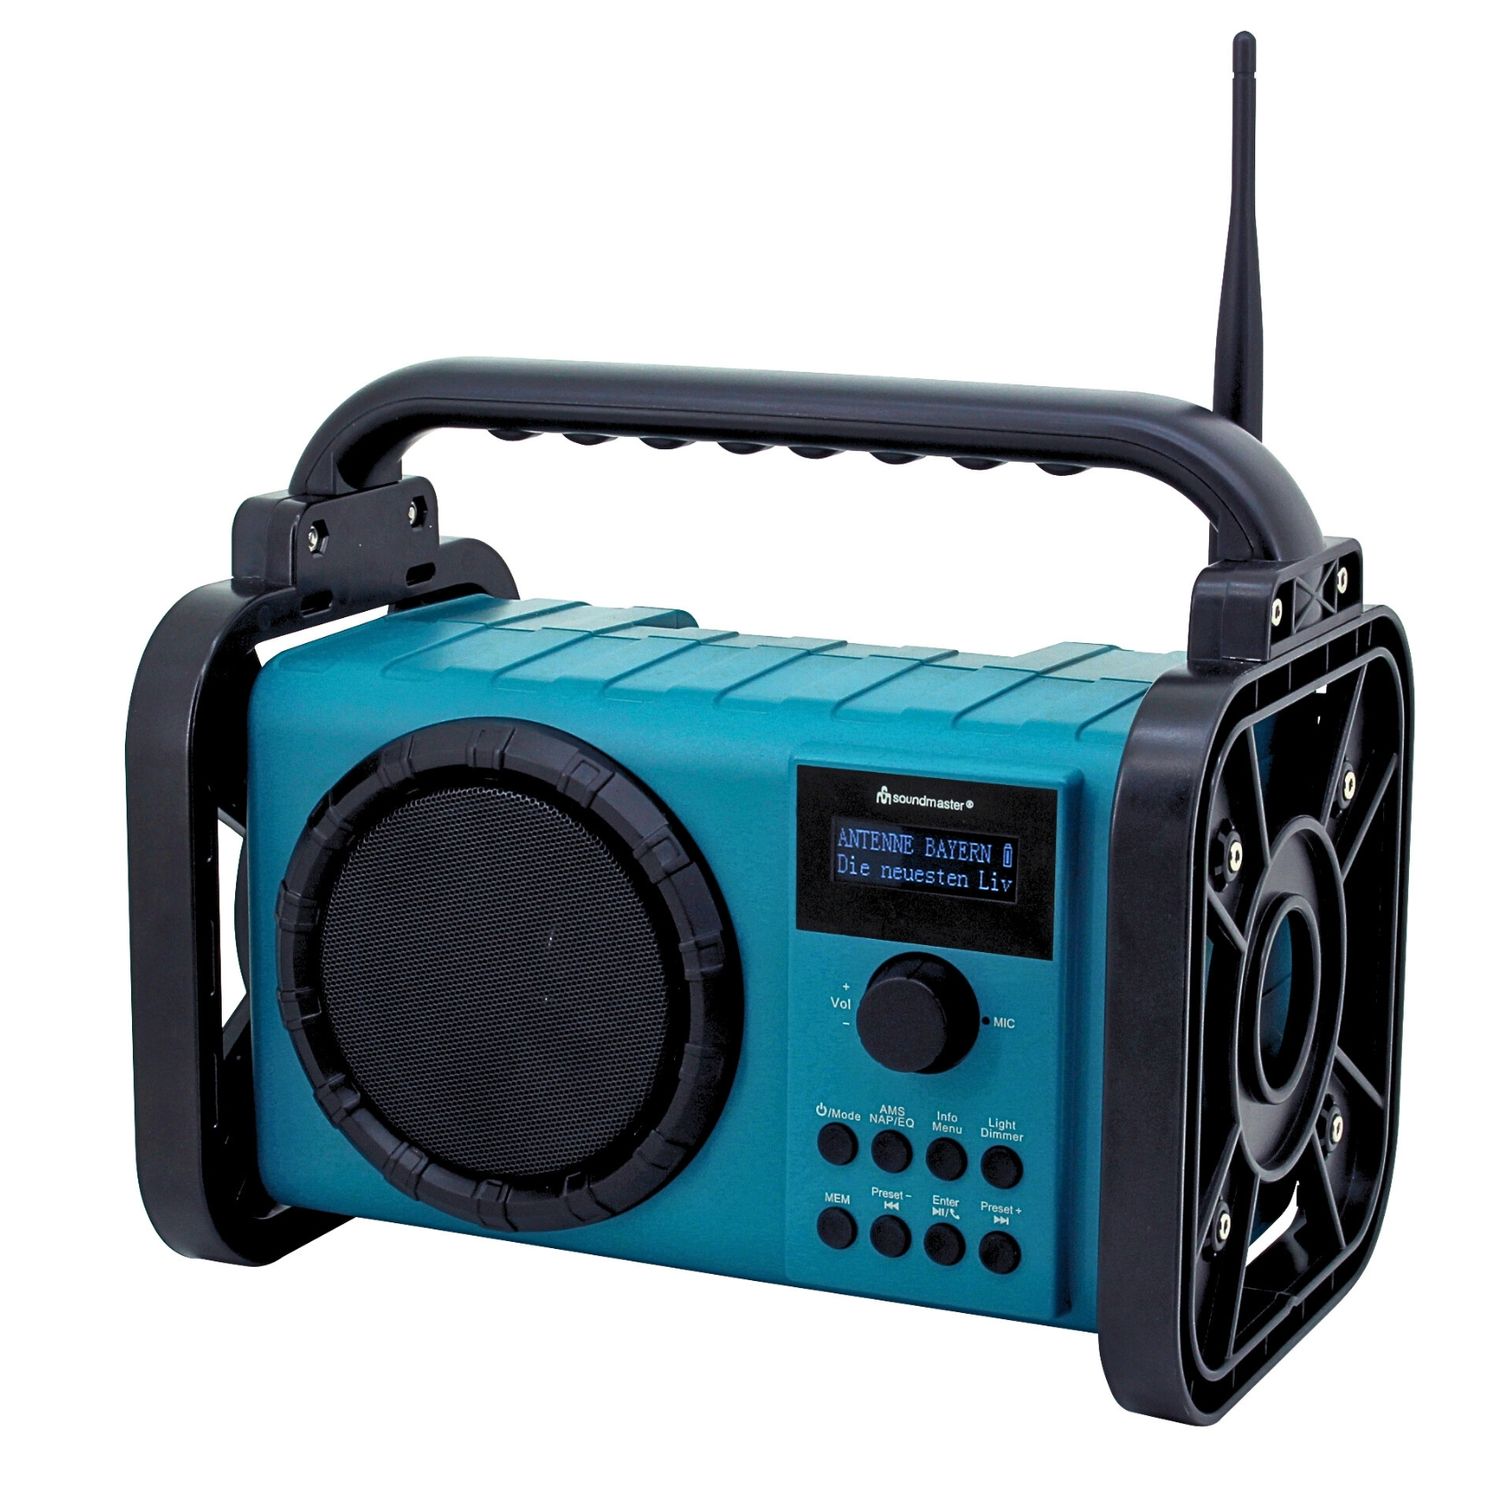 Radio de chantier Soundmaster DAB80 avec DAB+ FM Bluetooth et batterie Li-Ion IP44 étanche à la poussière et aux éclaboussures